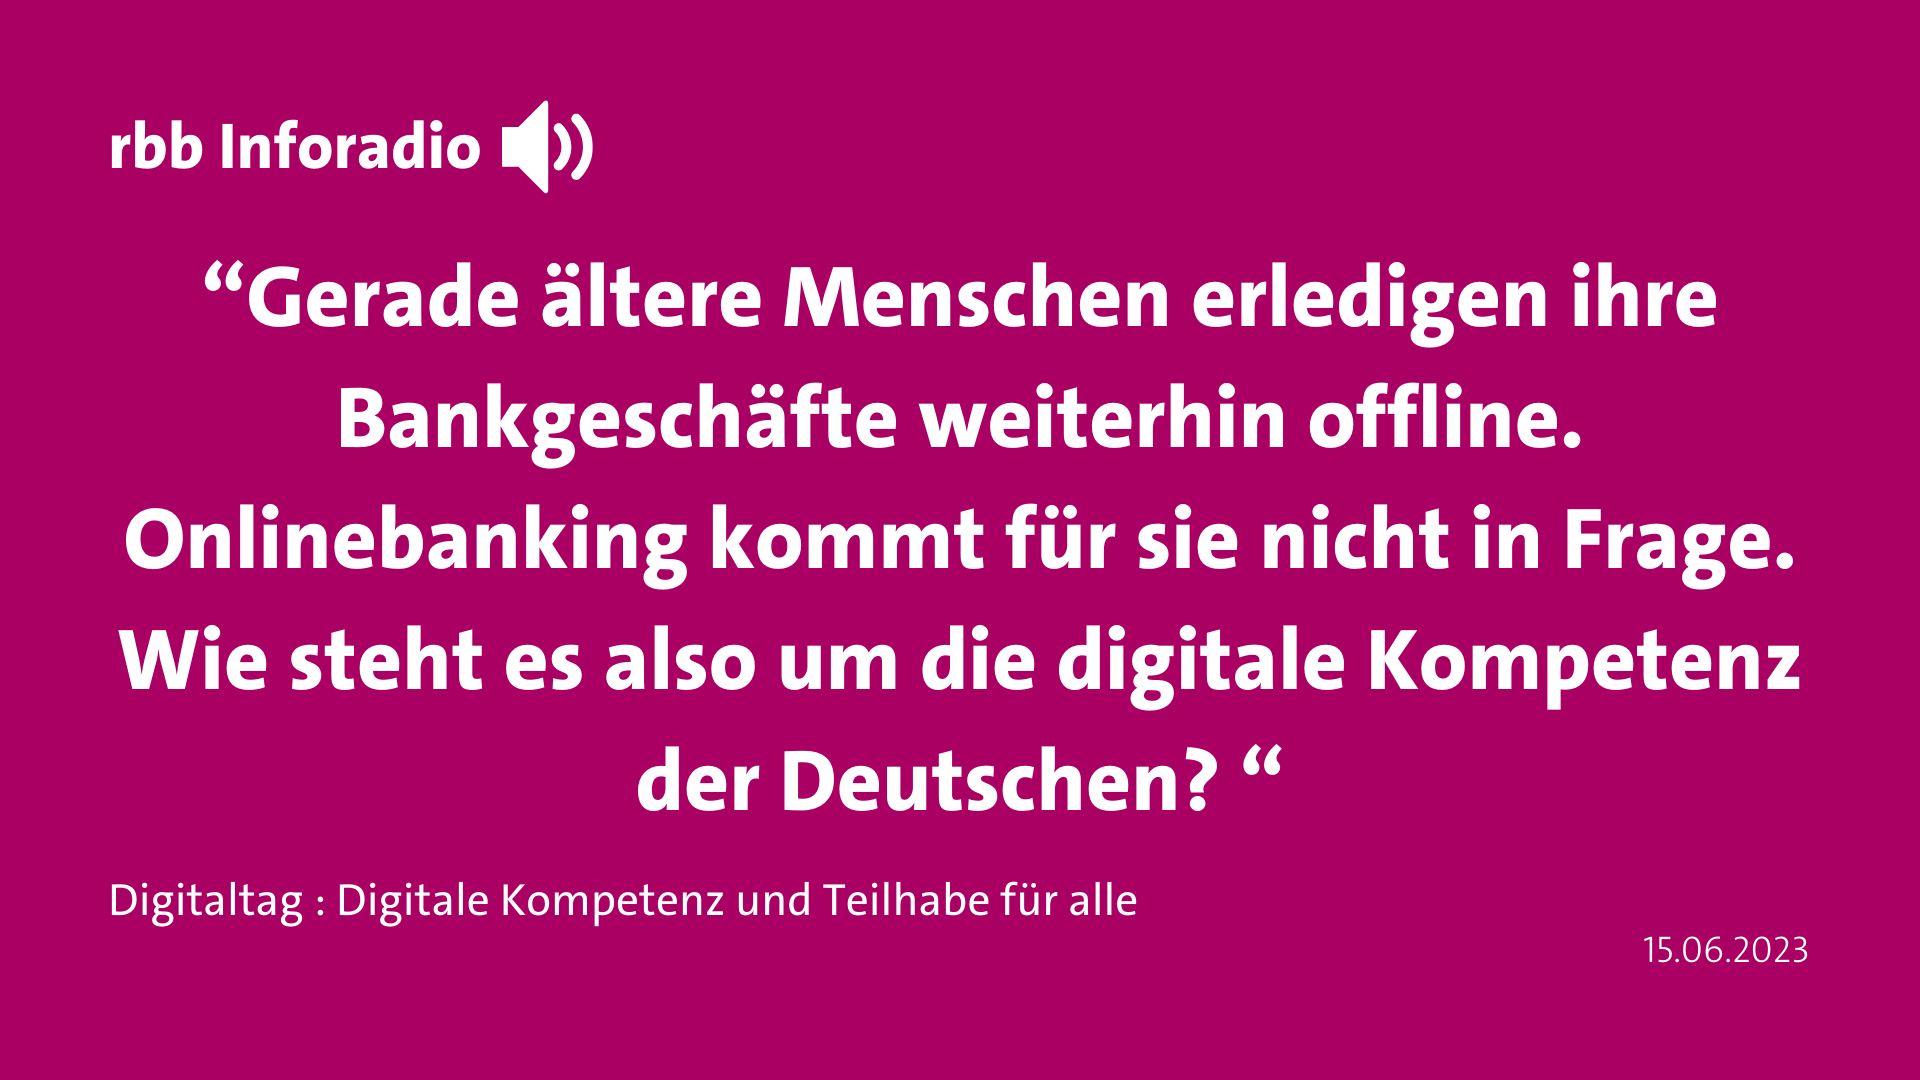 Zitat rbb Inforadio “Gerade ältere Menschen erledigen ihre Bankgeschäfte weiterhin offline. Onlinebanking kommt für sie nicht in Frage. Wie steht es also um die digitale Kompetenz der Deutschen? “